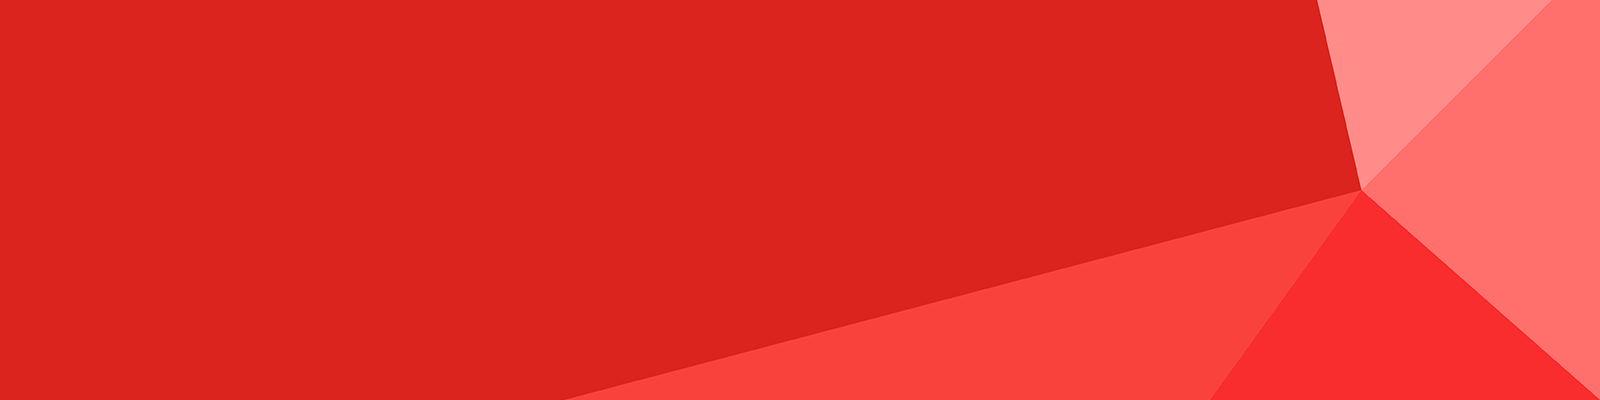 UTG red web banner